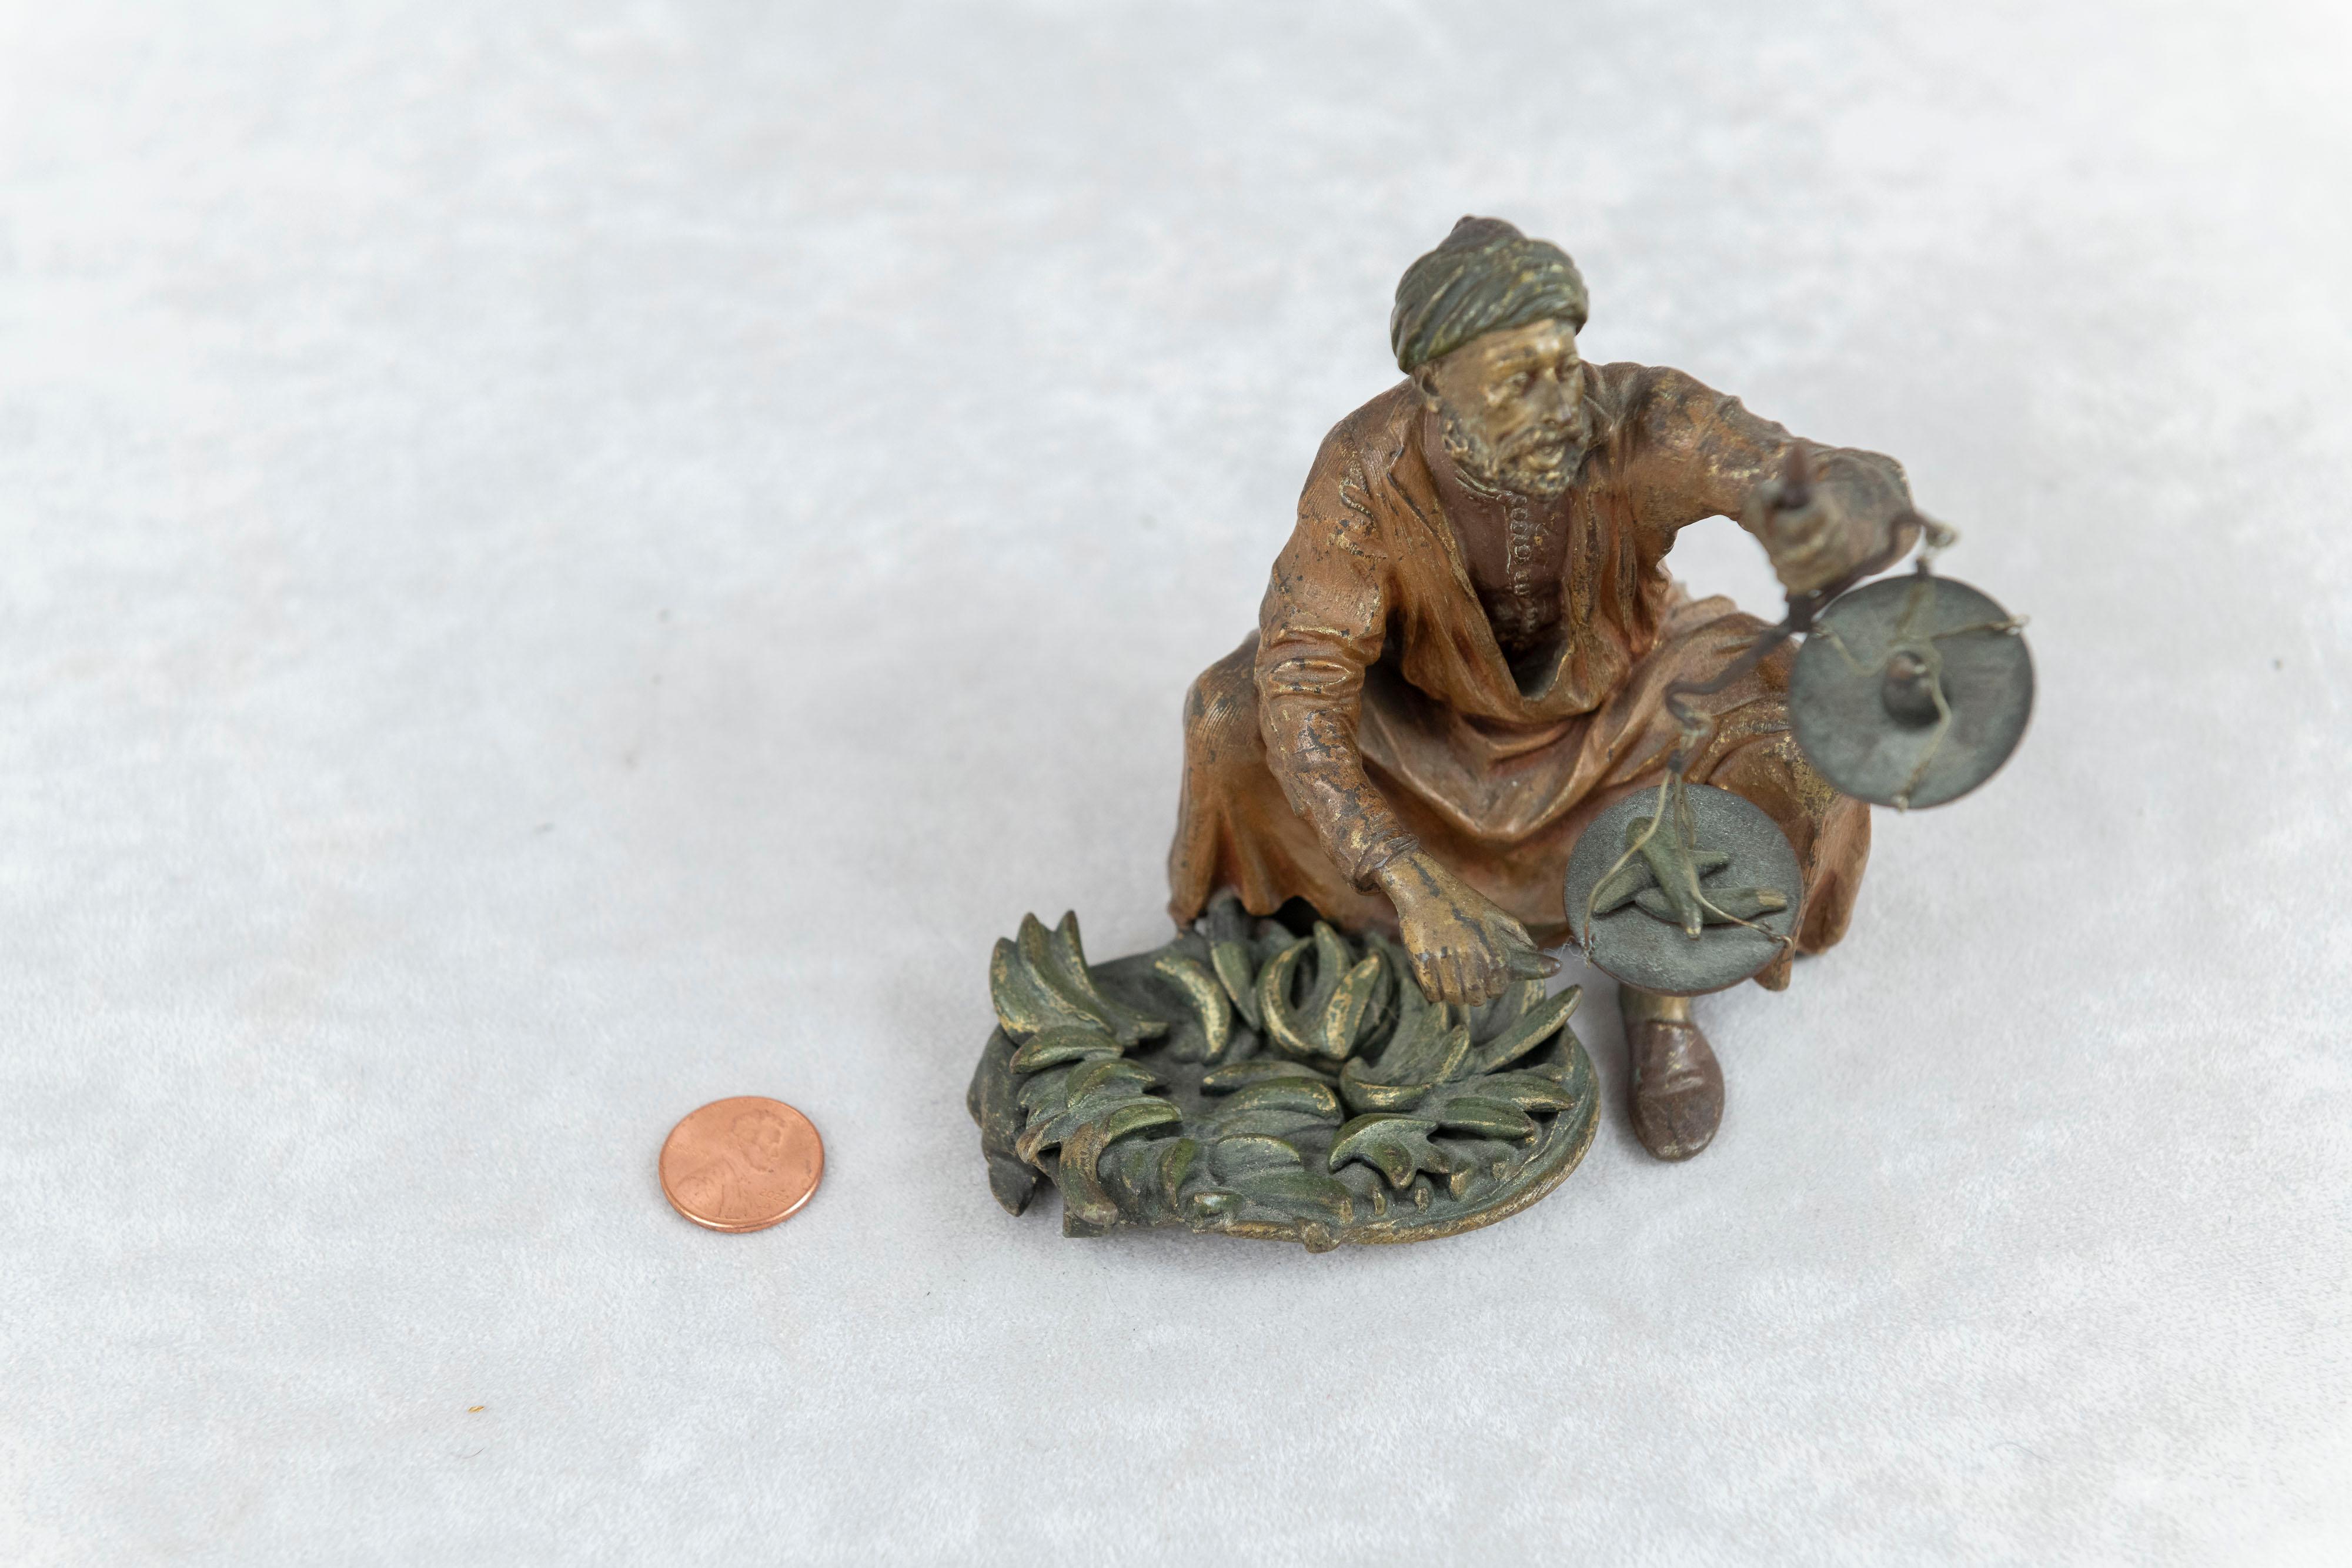  Un bronze de Vienne inhabituel, peint à froid, représentant un homme assis tenant une petite balance dans sa main gauche. La balance affiche un petit poids tandis qu'une banane pèse plus lourd de l'autre côté. Un exemple du travail de Bergmann que